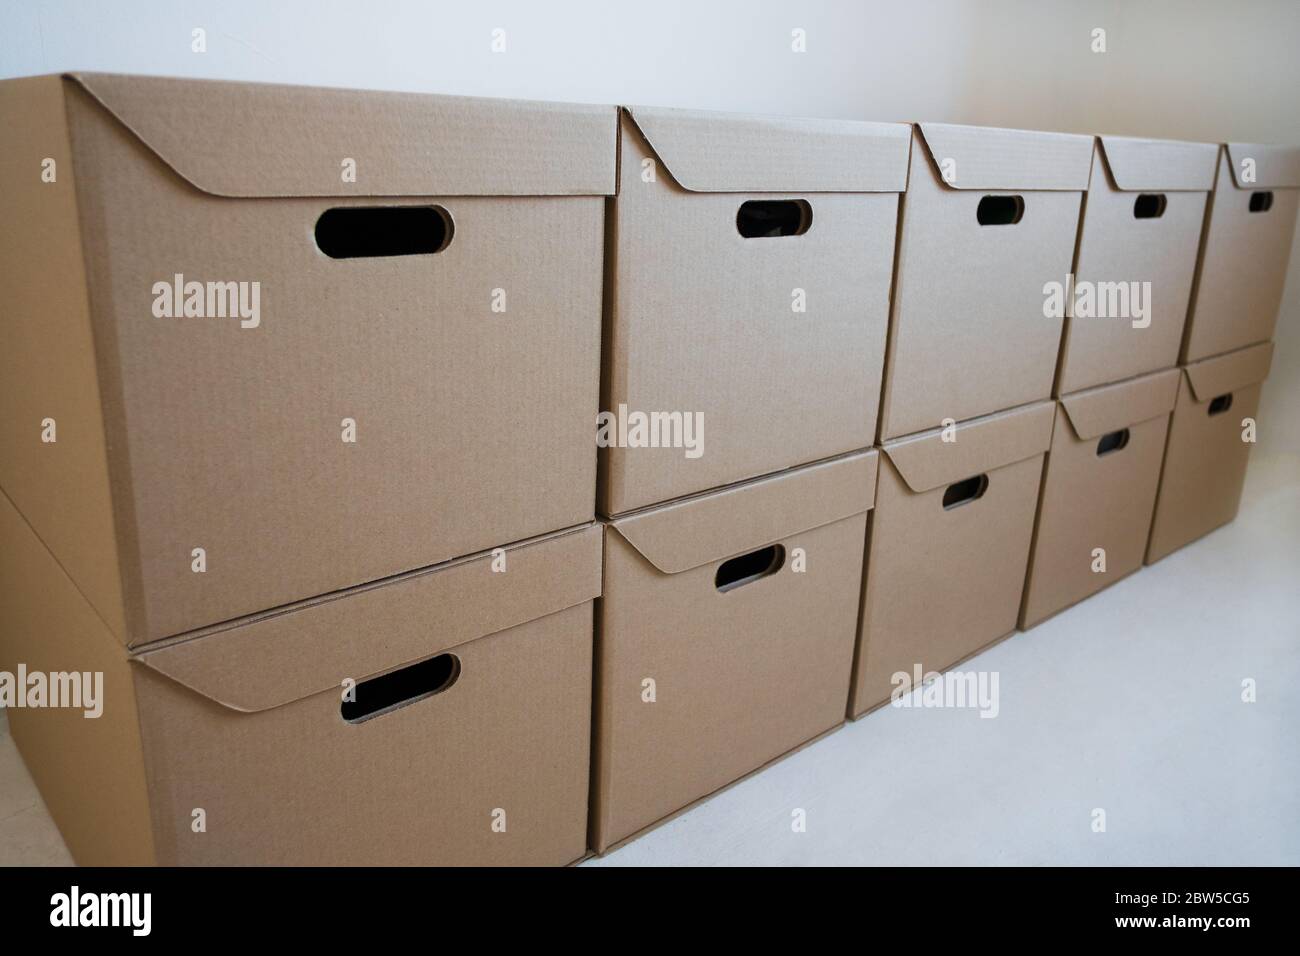 Les boîtes en carton sont stockées dans l'entrepôt. Banque D'Images